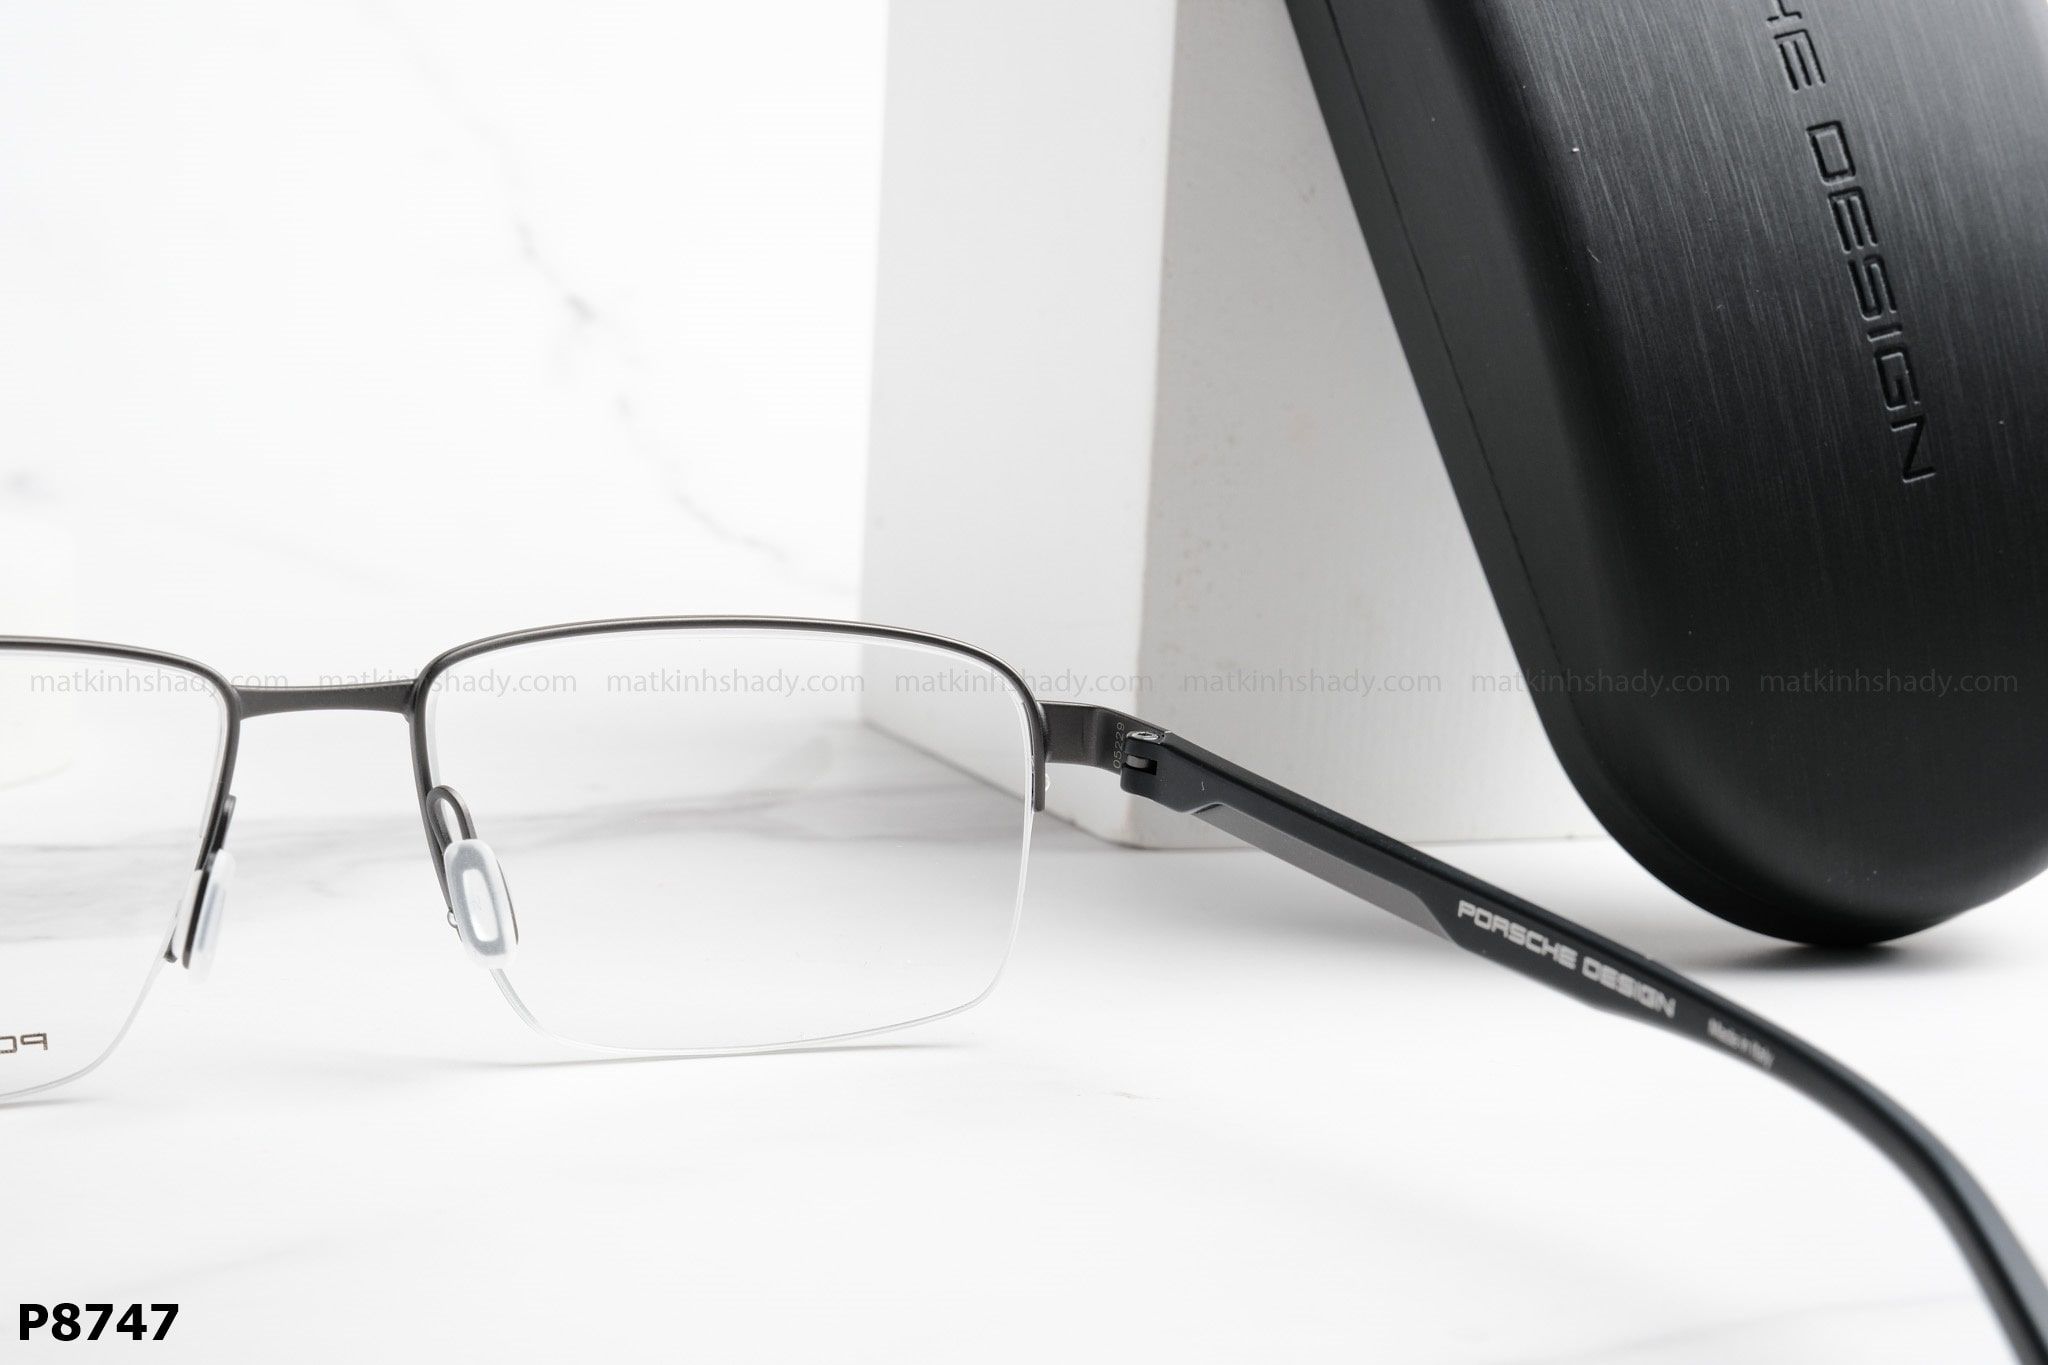  Porsche Design Eyewear - Glasses - P8747 